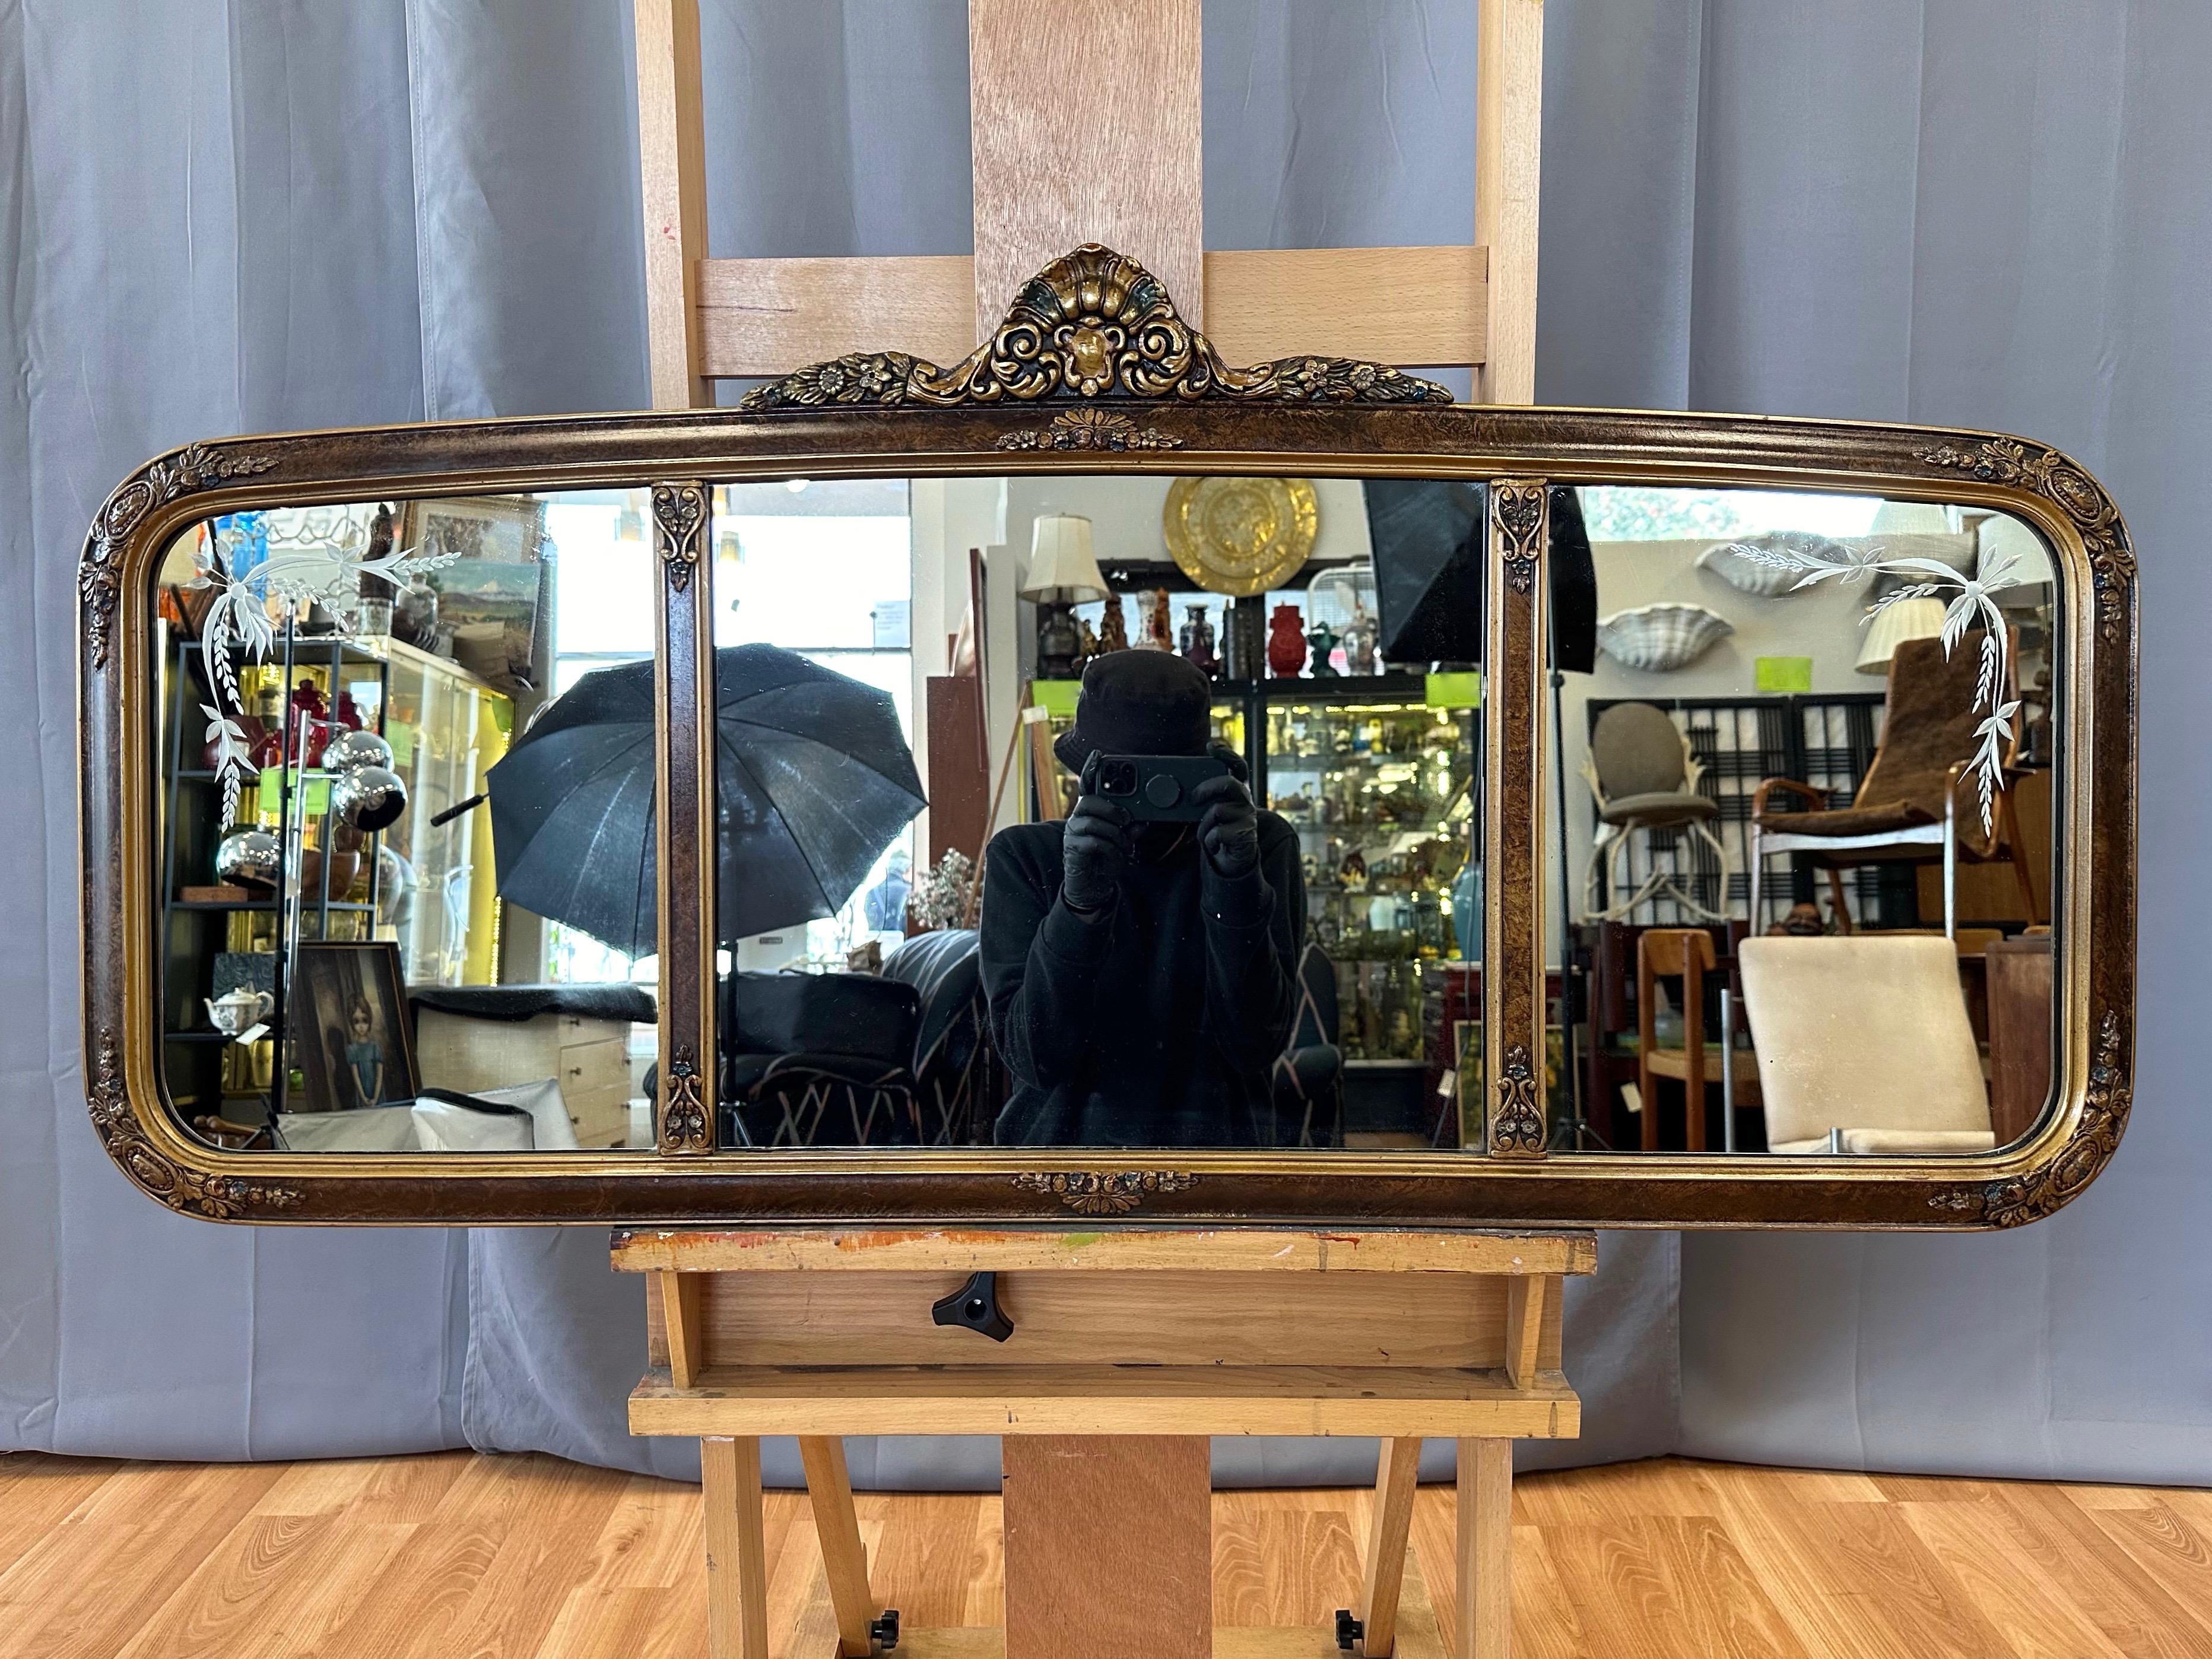 Brillant miroir édouardien à trois panneaux en verre gravé, vers 1910, influencé par la Brilliante, avec cadre artisanal, peint à la main et décoré de détails dorés.

Cadre en bois large fabriqué à la main avec finition en similicuir peinte à la